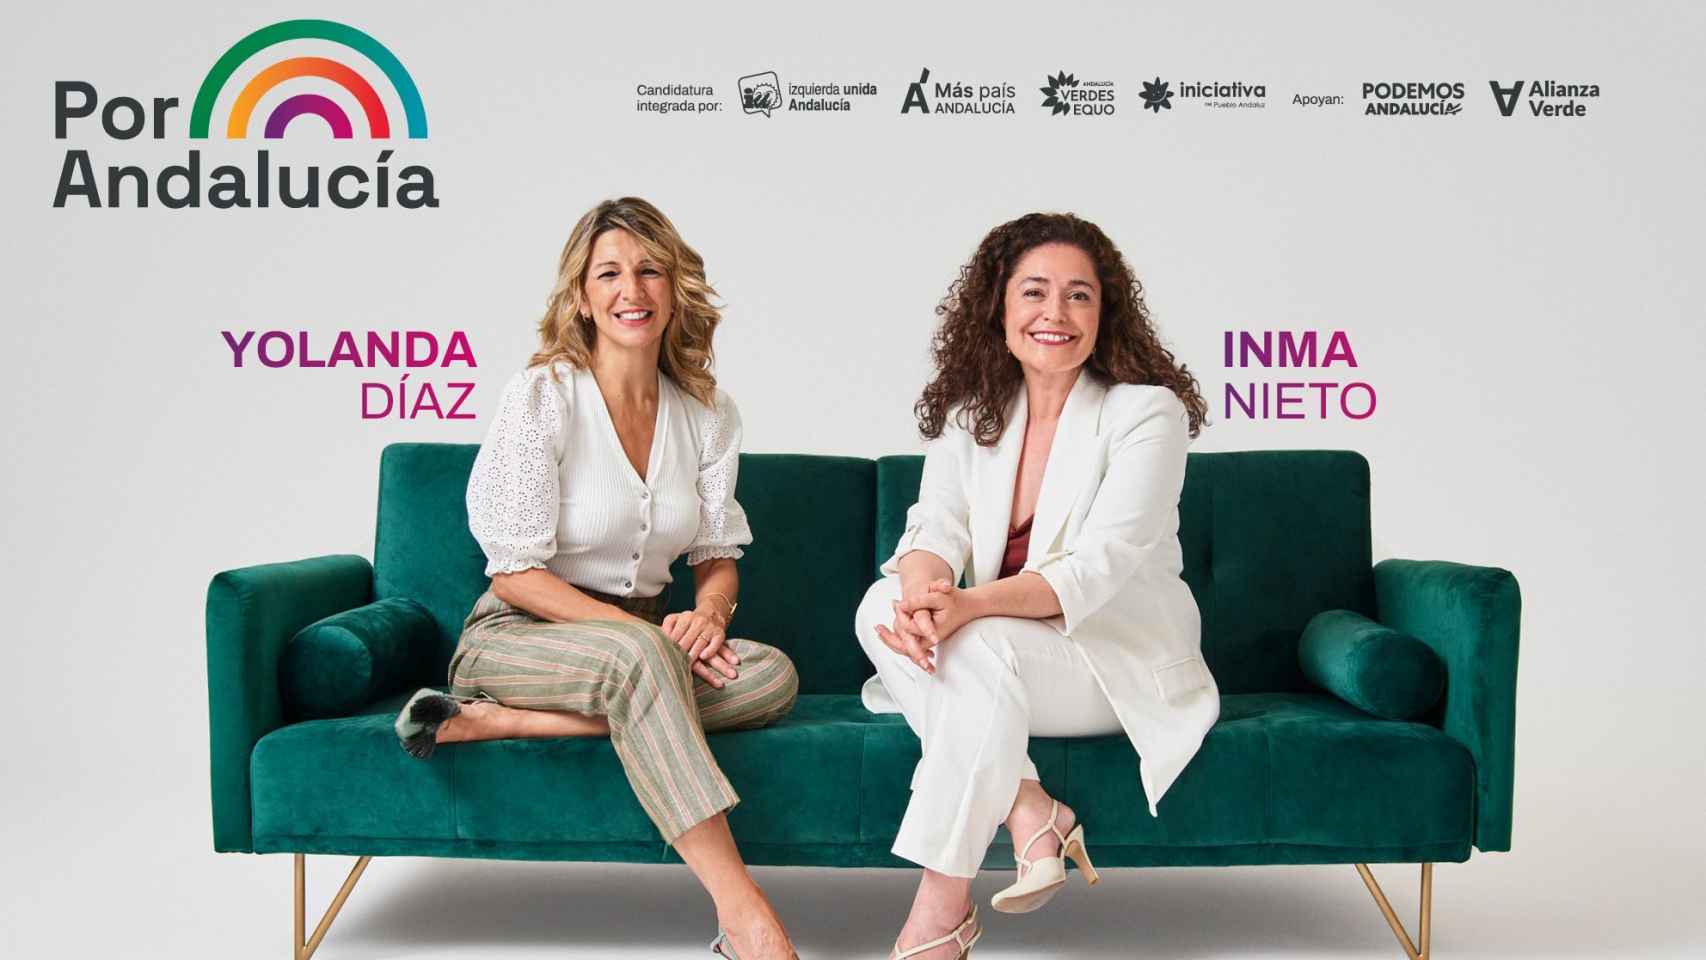 Cartel de la campaña de Por Andalucía, con Yolanda Díaz e Inma Nieto. A la derecha, Podemos apoya.